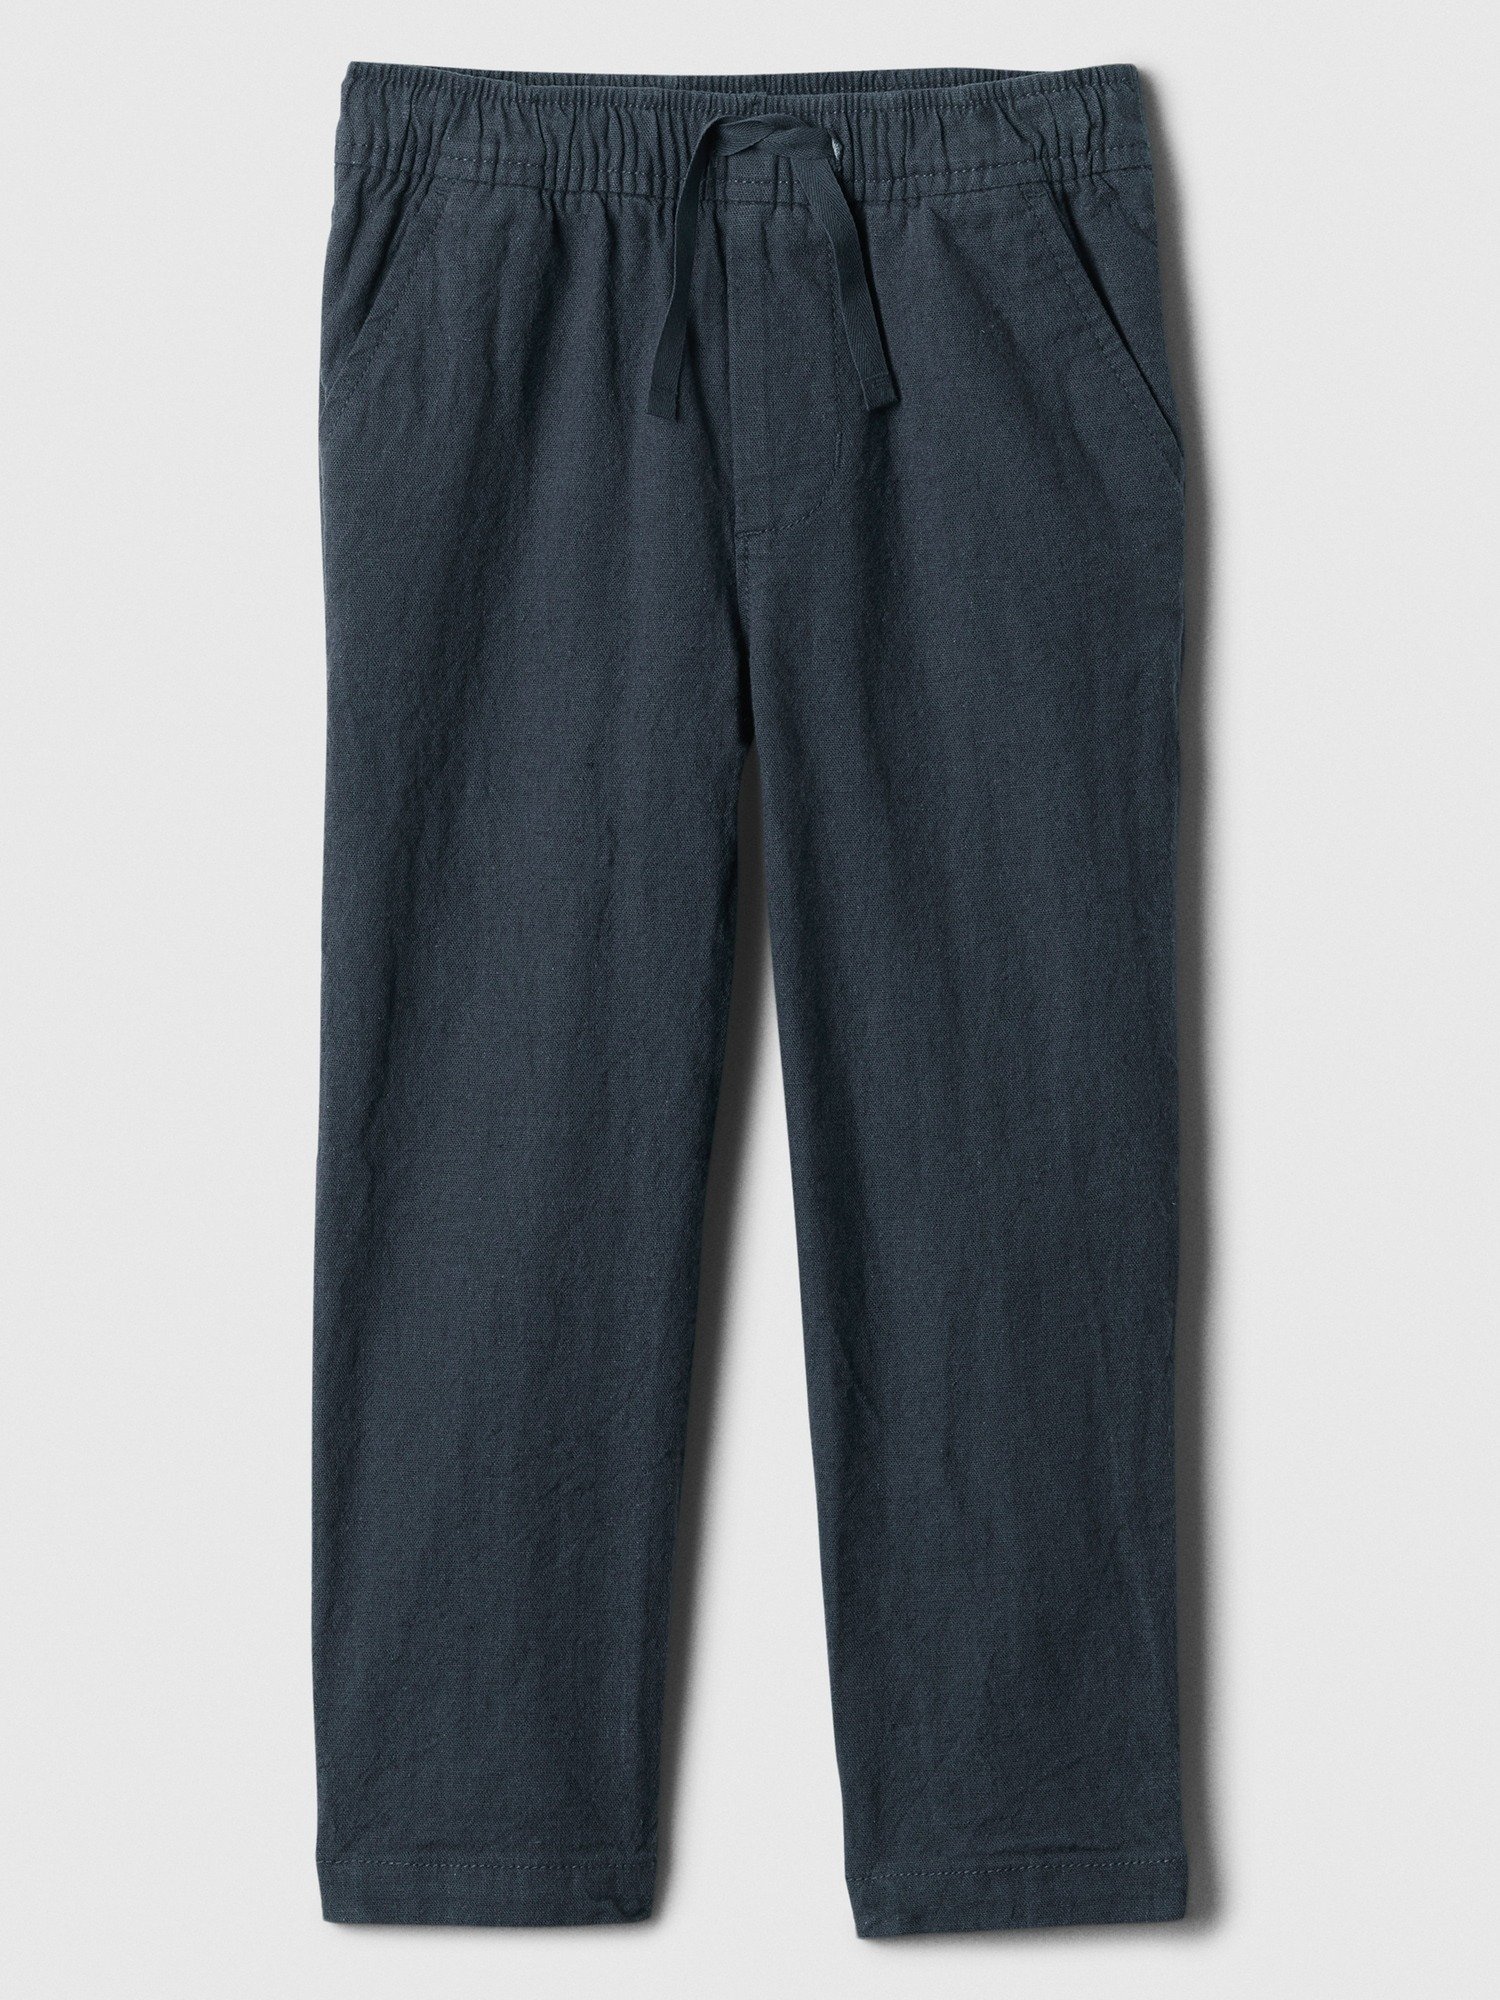 Keten Karışımlı Tapered Pull-On Pantolon product image